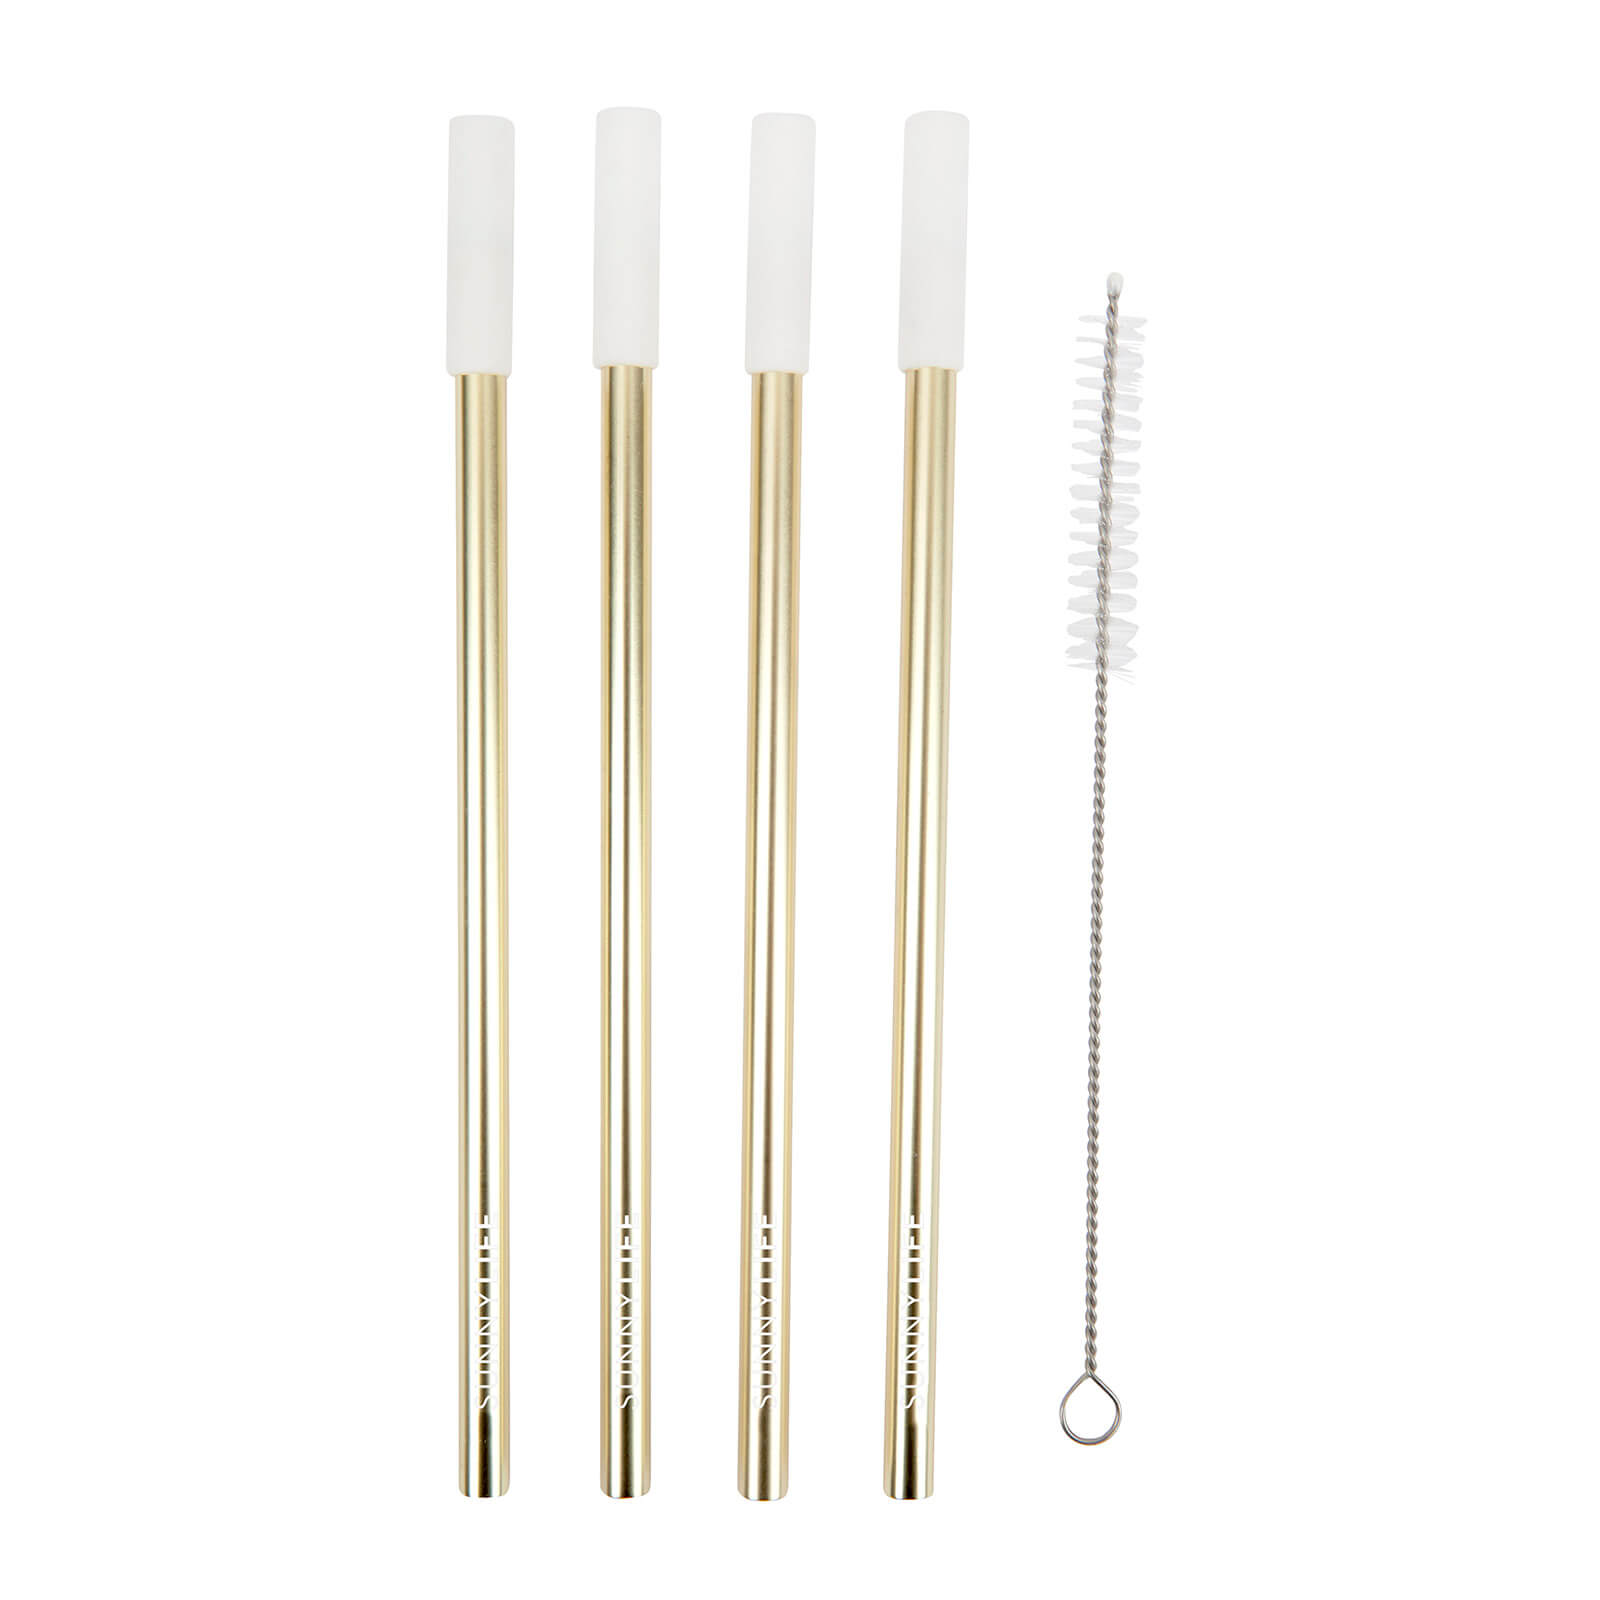 Sunnylife Reusable Metal & Silicone Straws - Gold & White - Set of 4